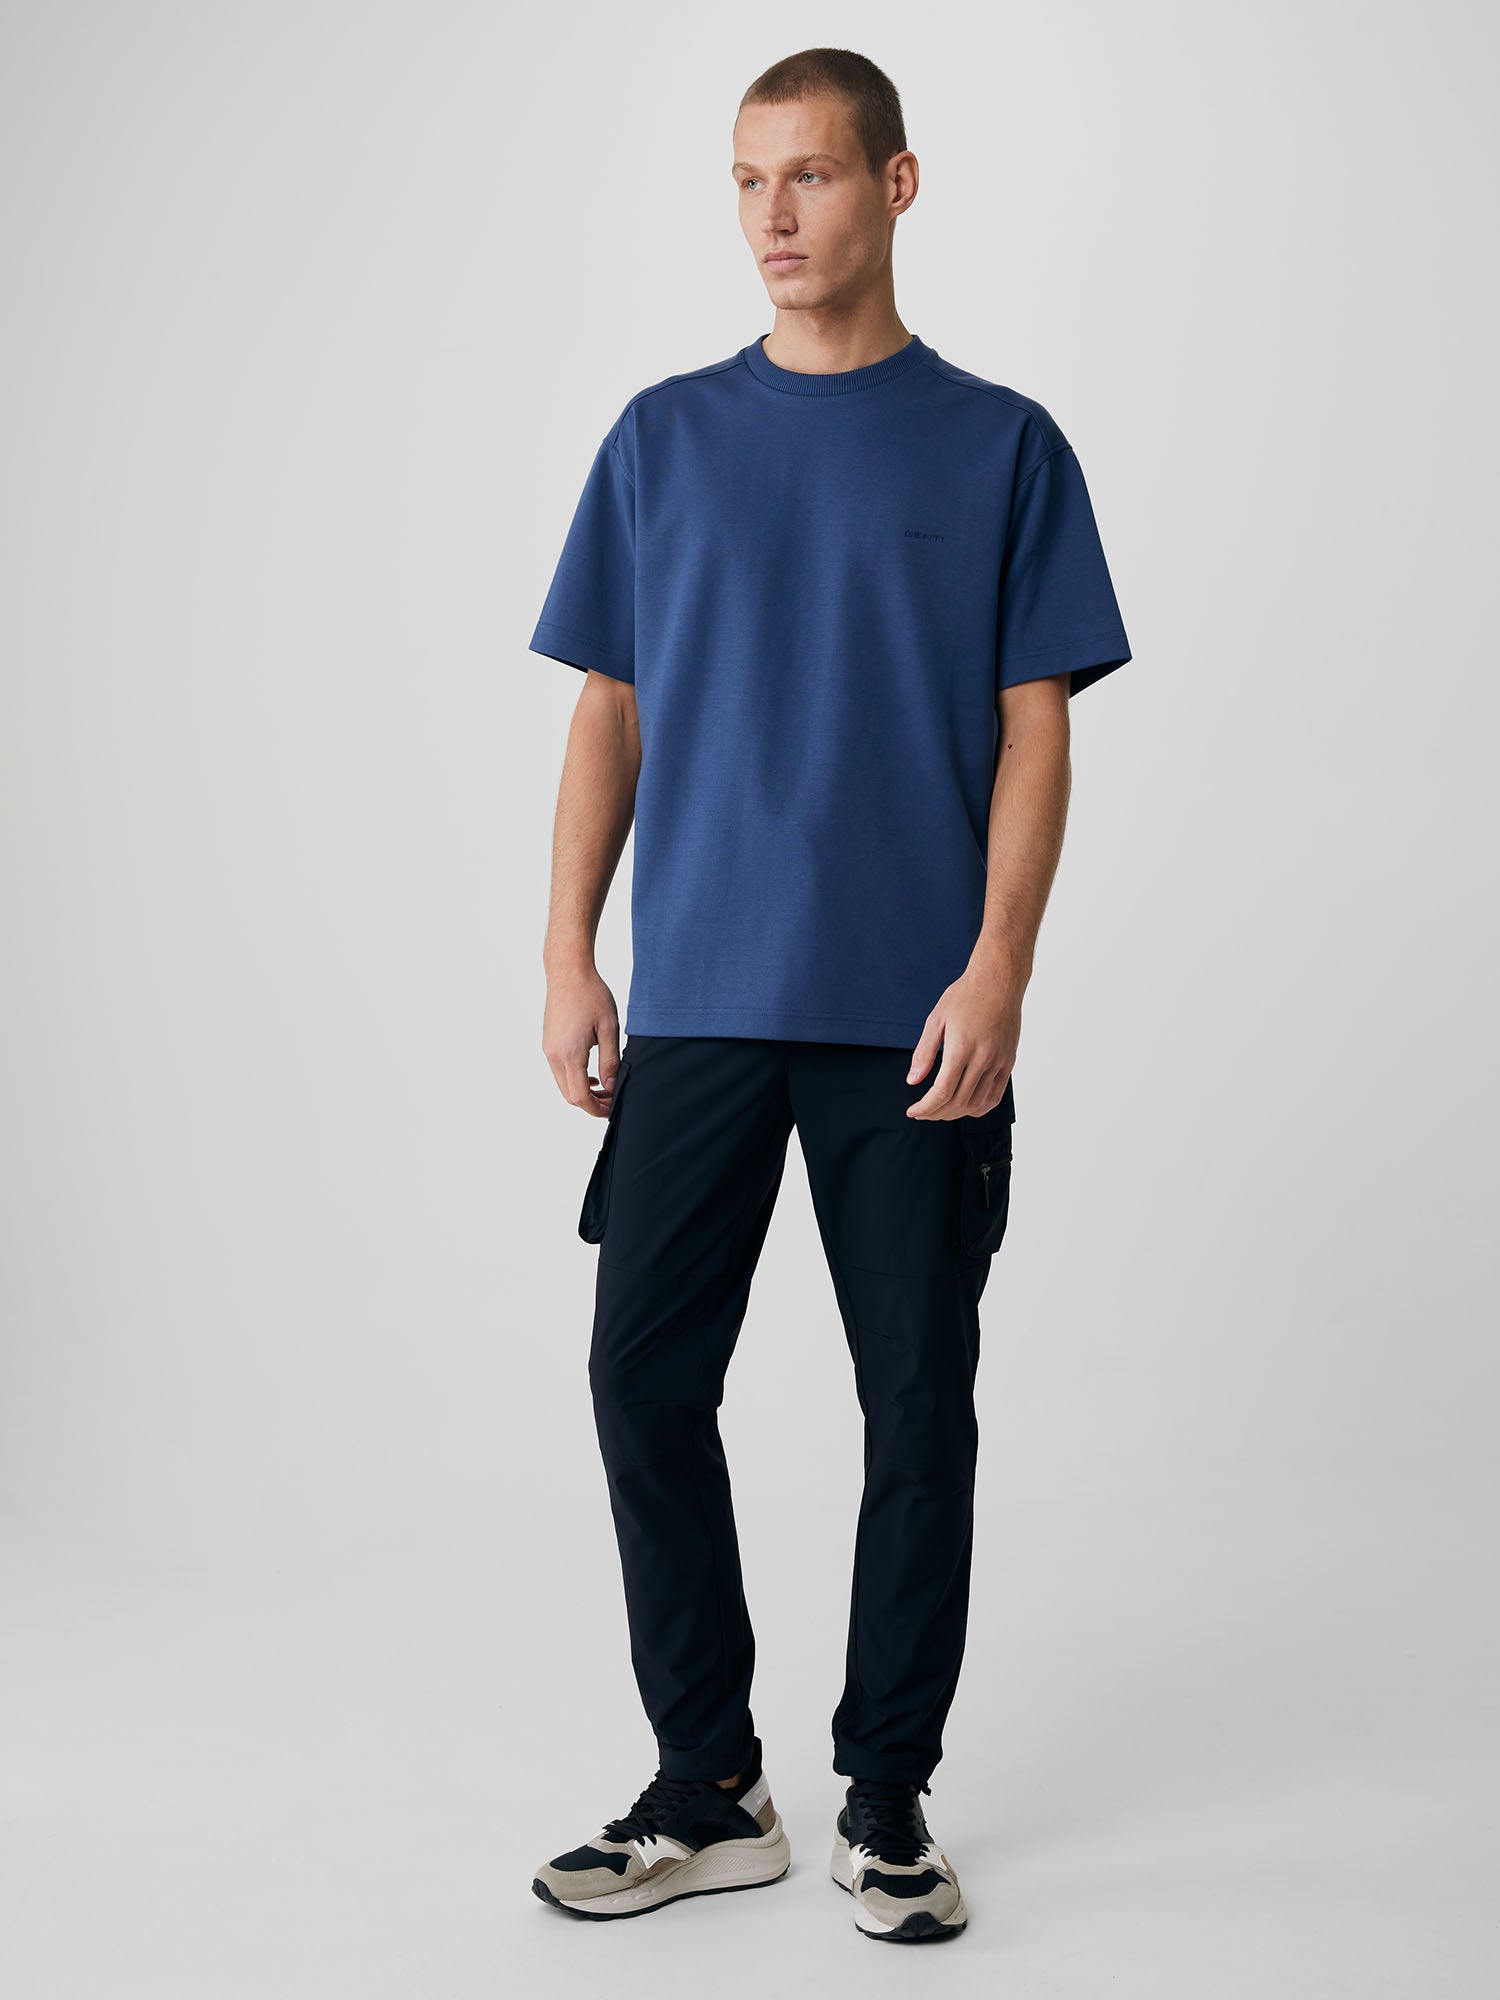 Genti T-shirt - Raf blauw